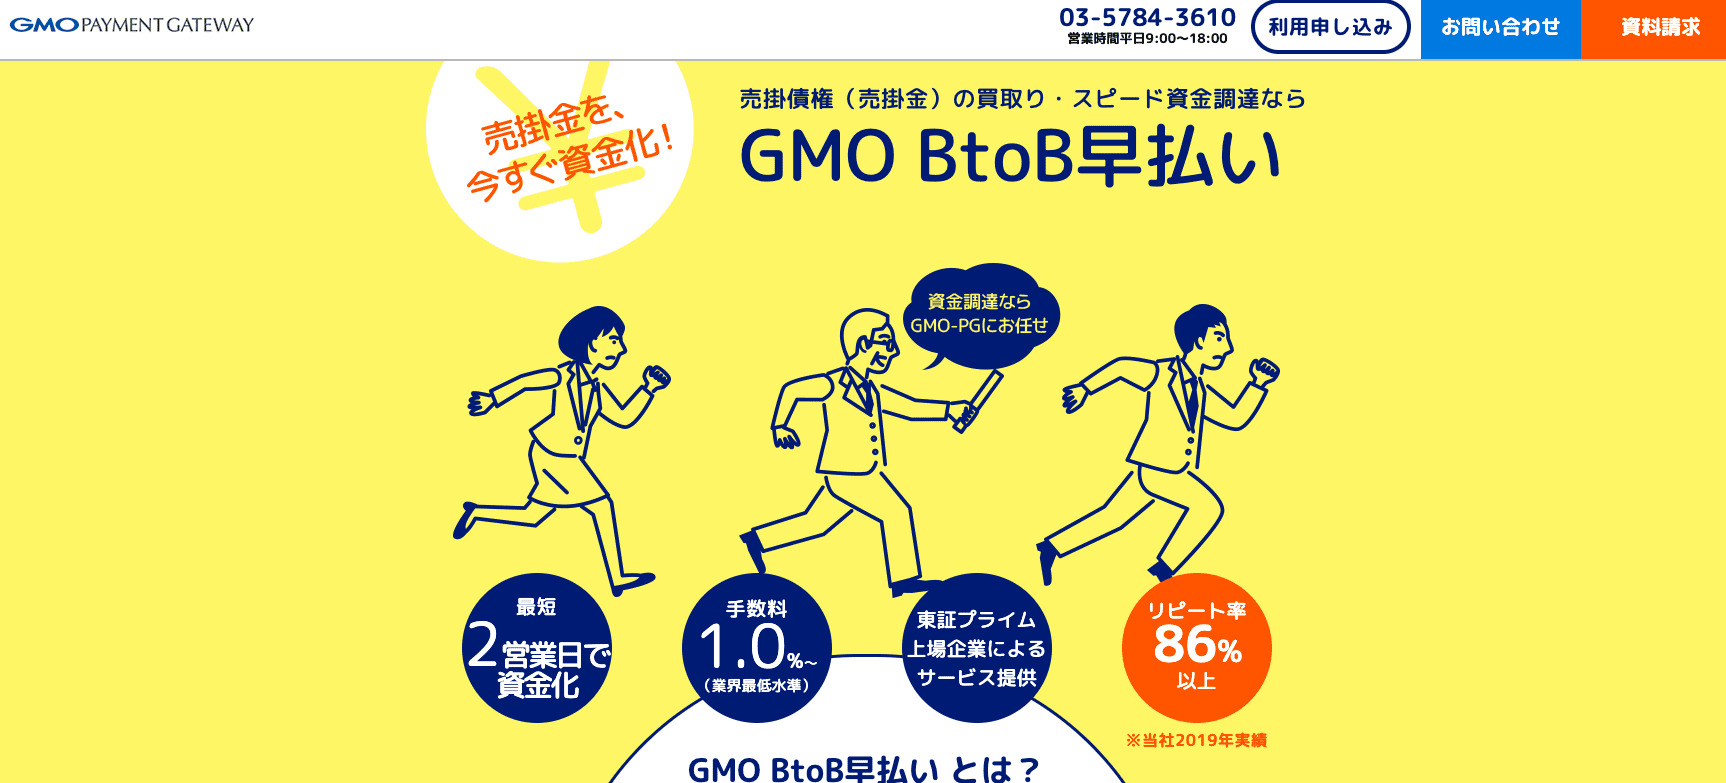 GMO BtoB 早払いの公式サイト画像